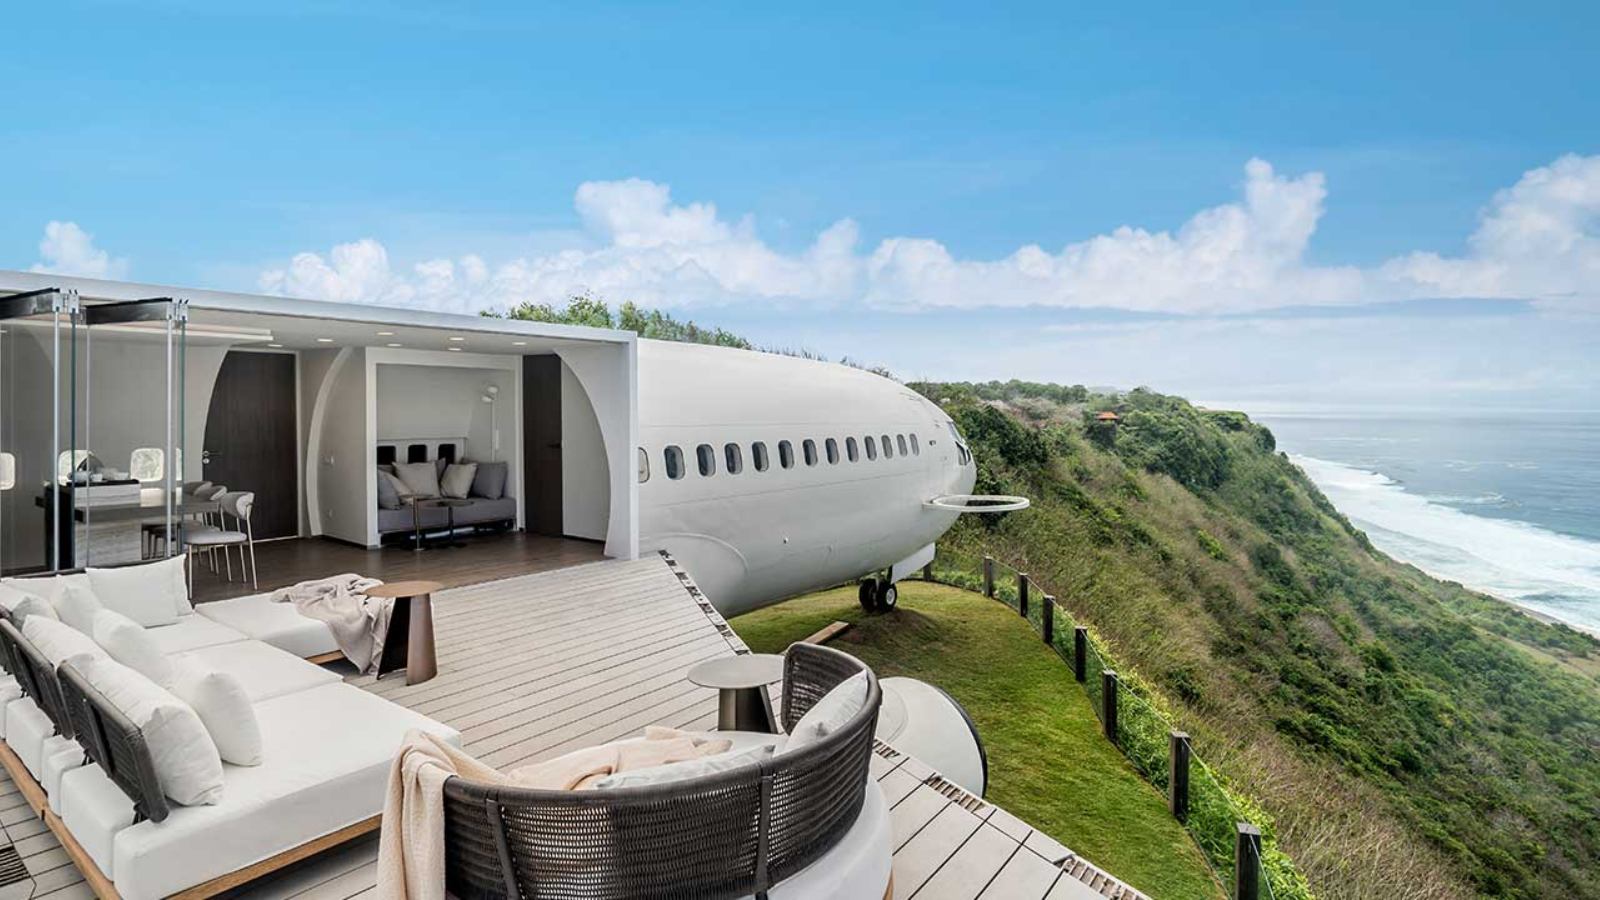 Private Jet Villa: el impresionante avión convertido en hotel